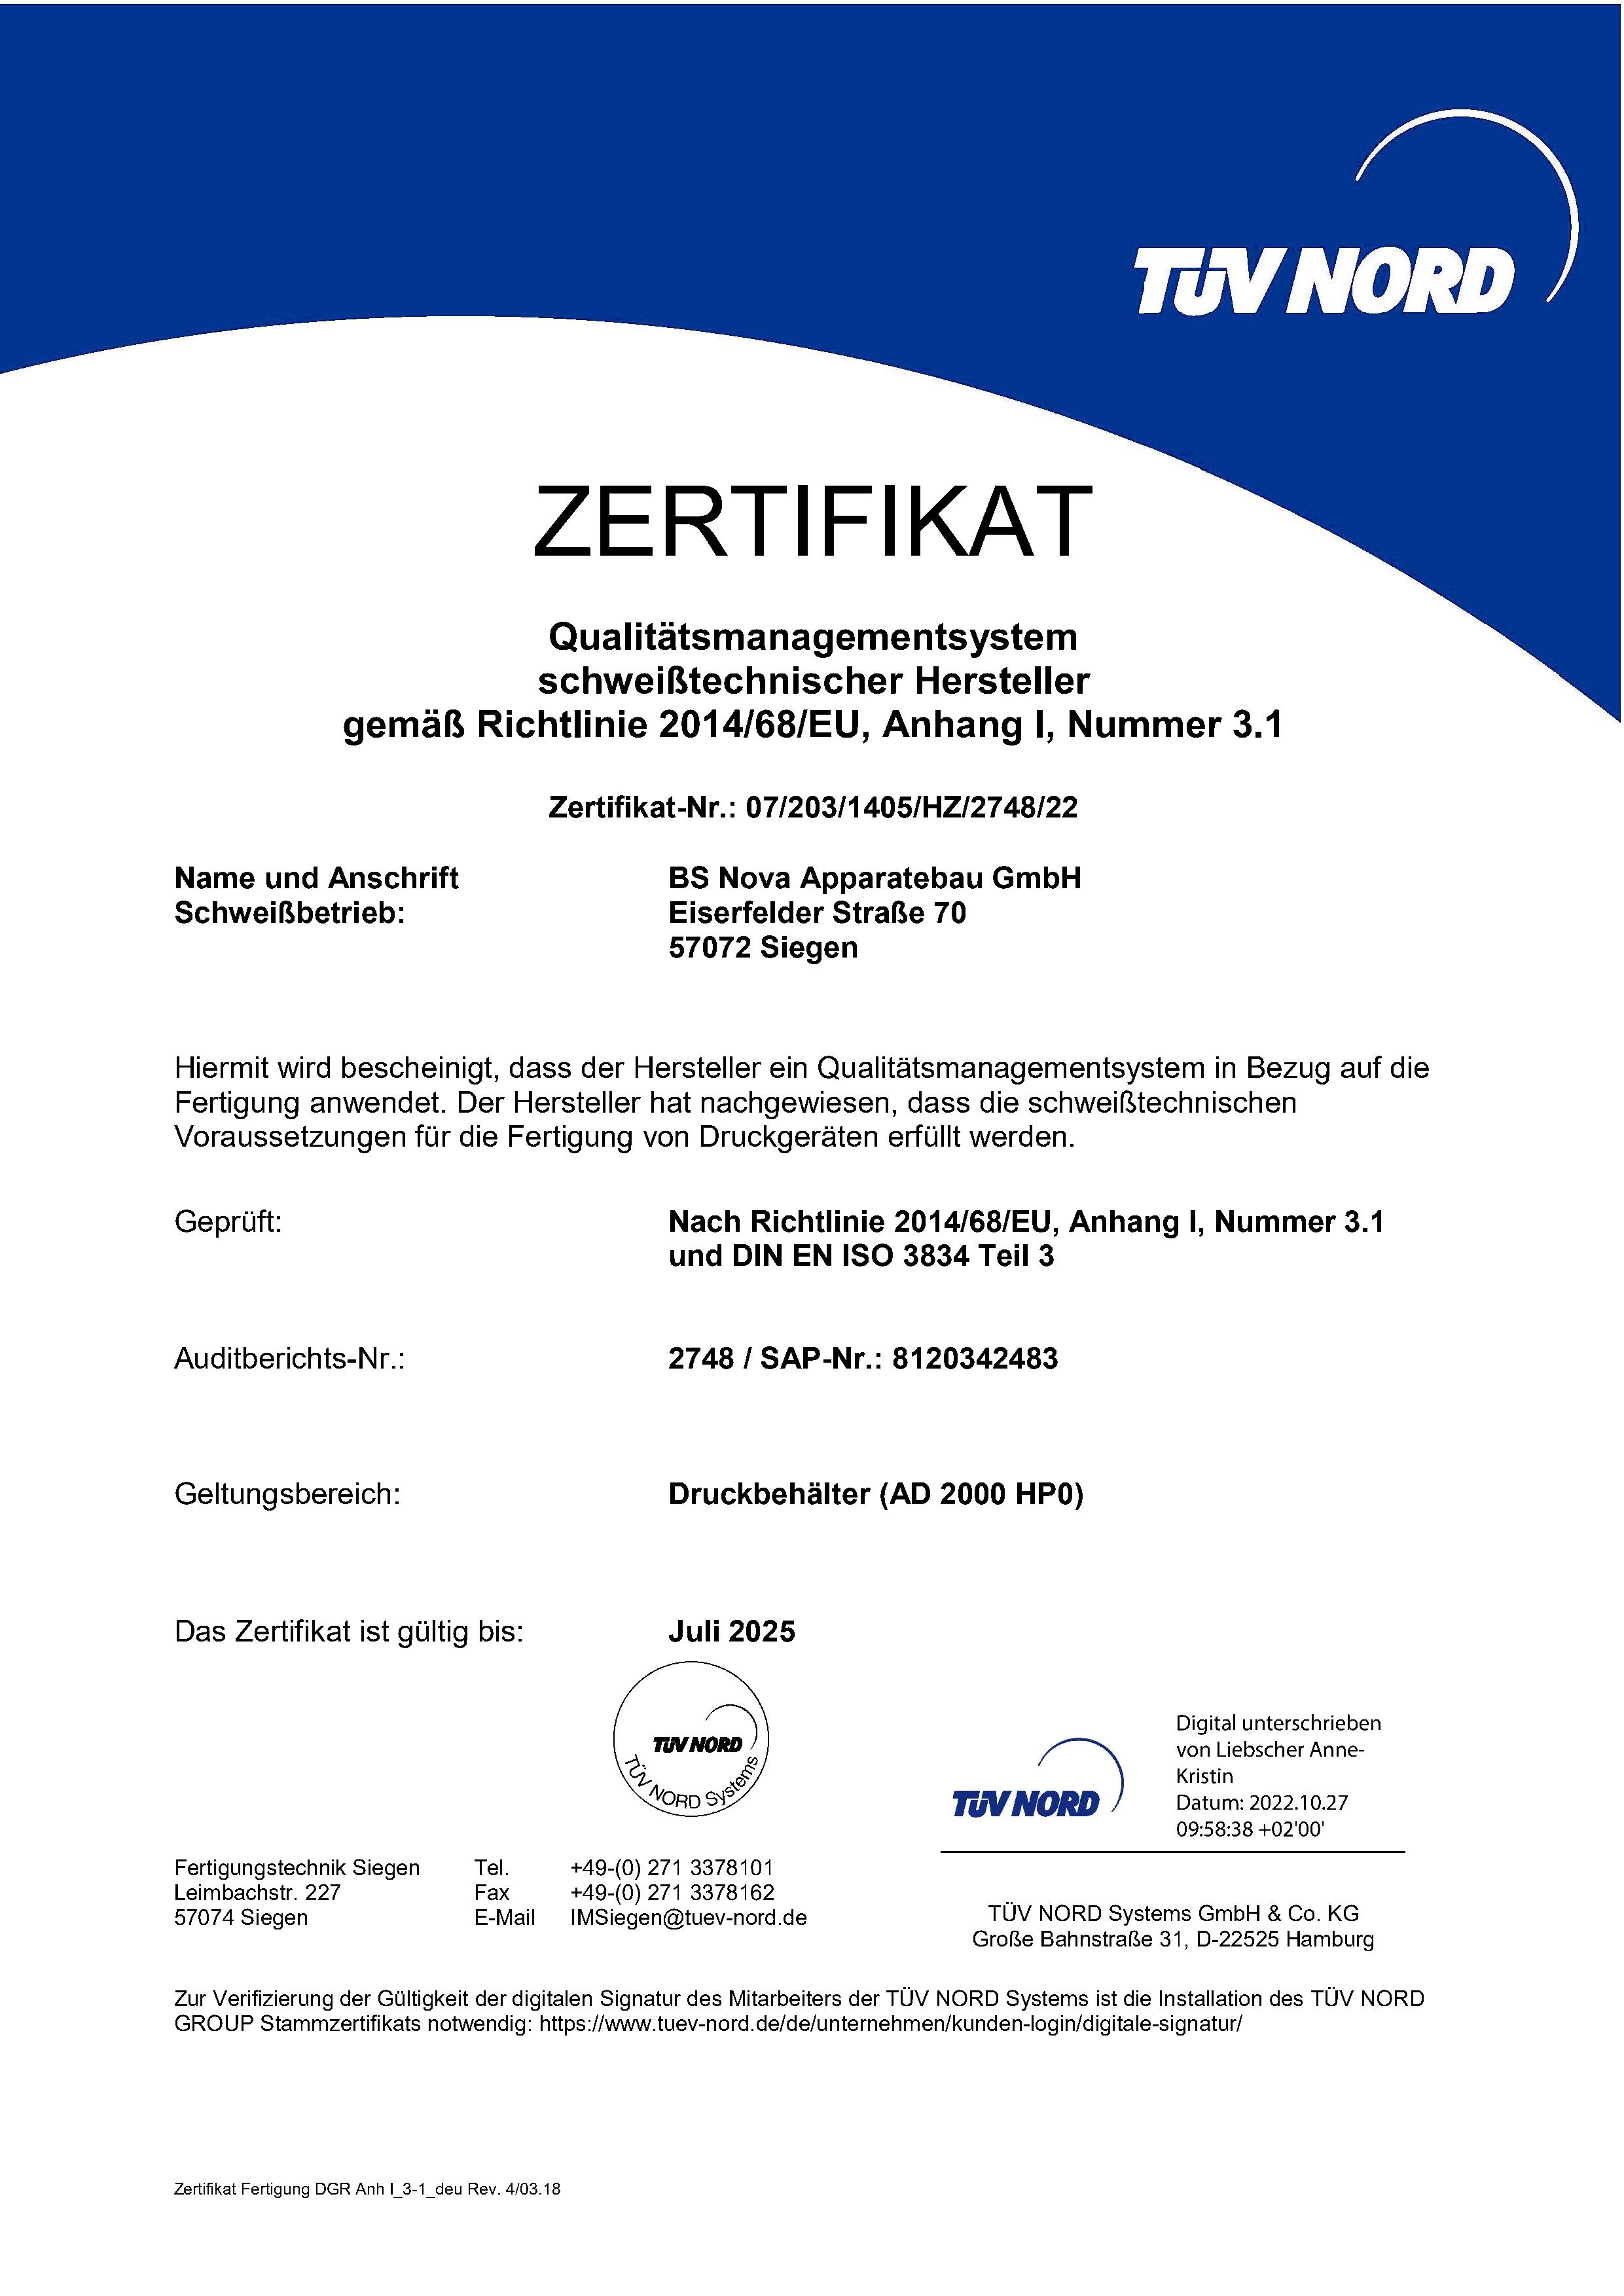 Zertifikat Qualitätsmanagementsystem deutsch